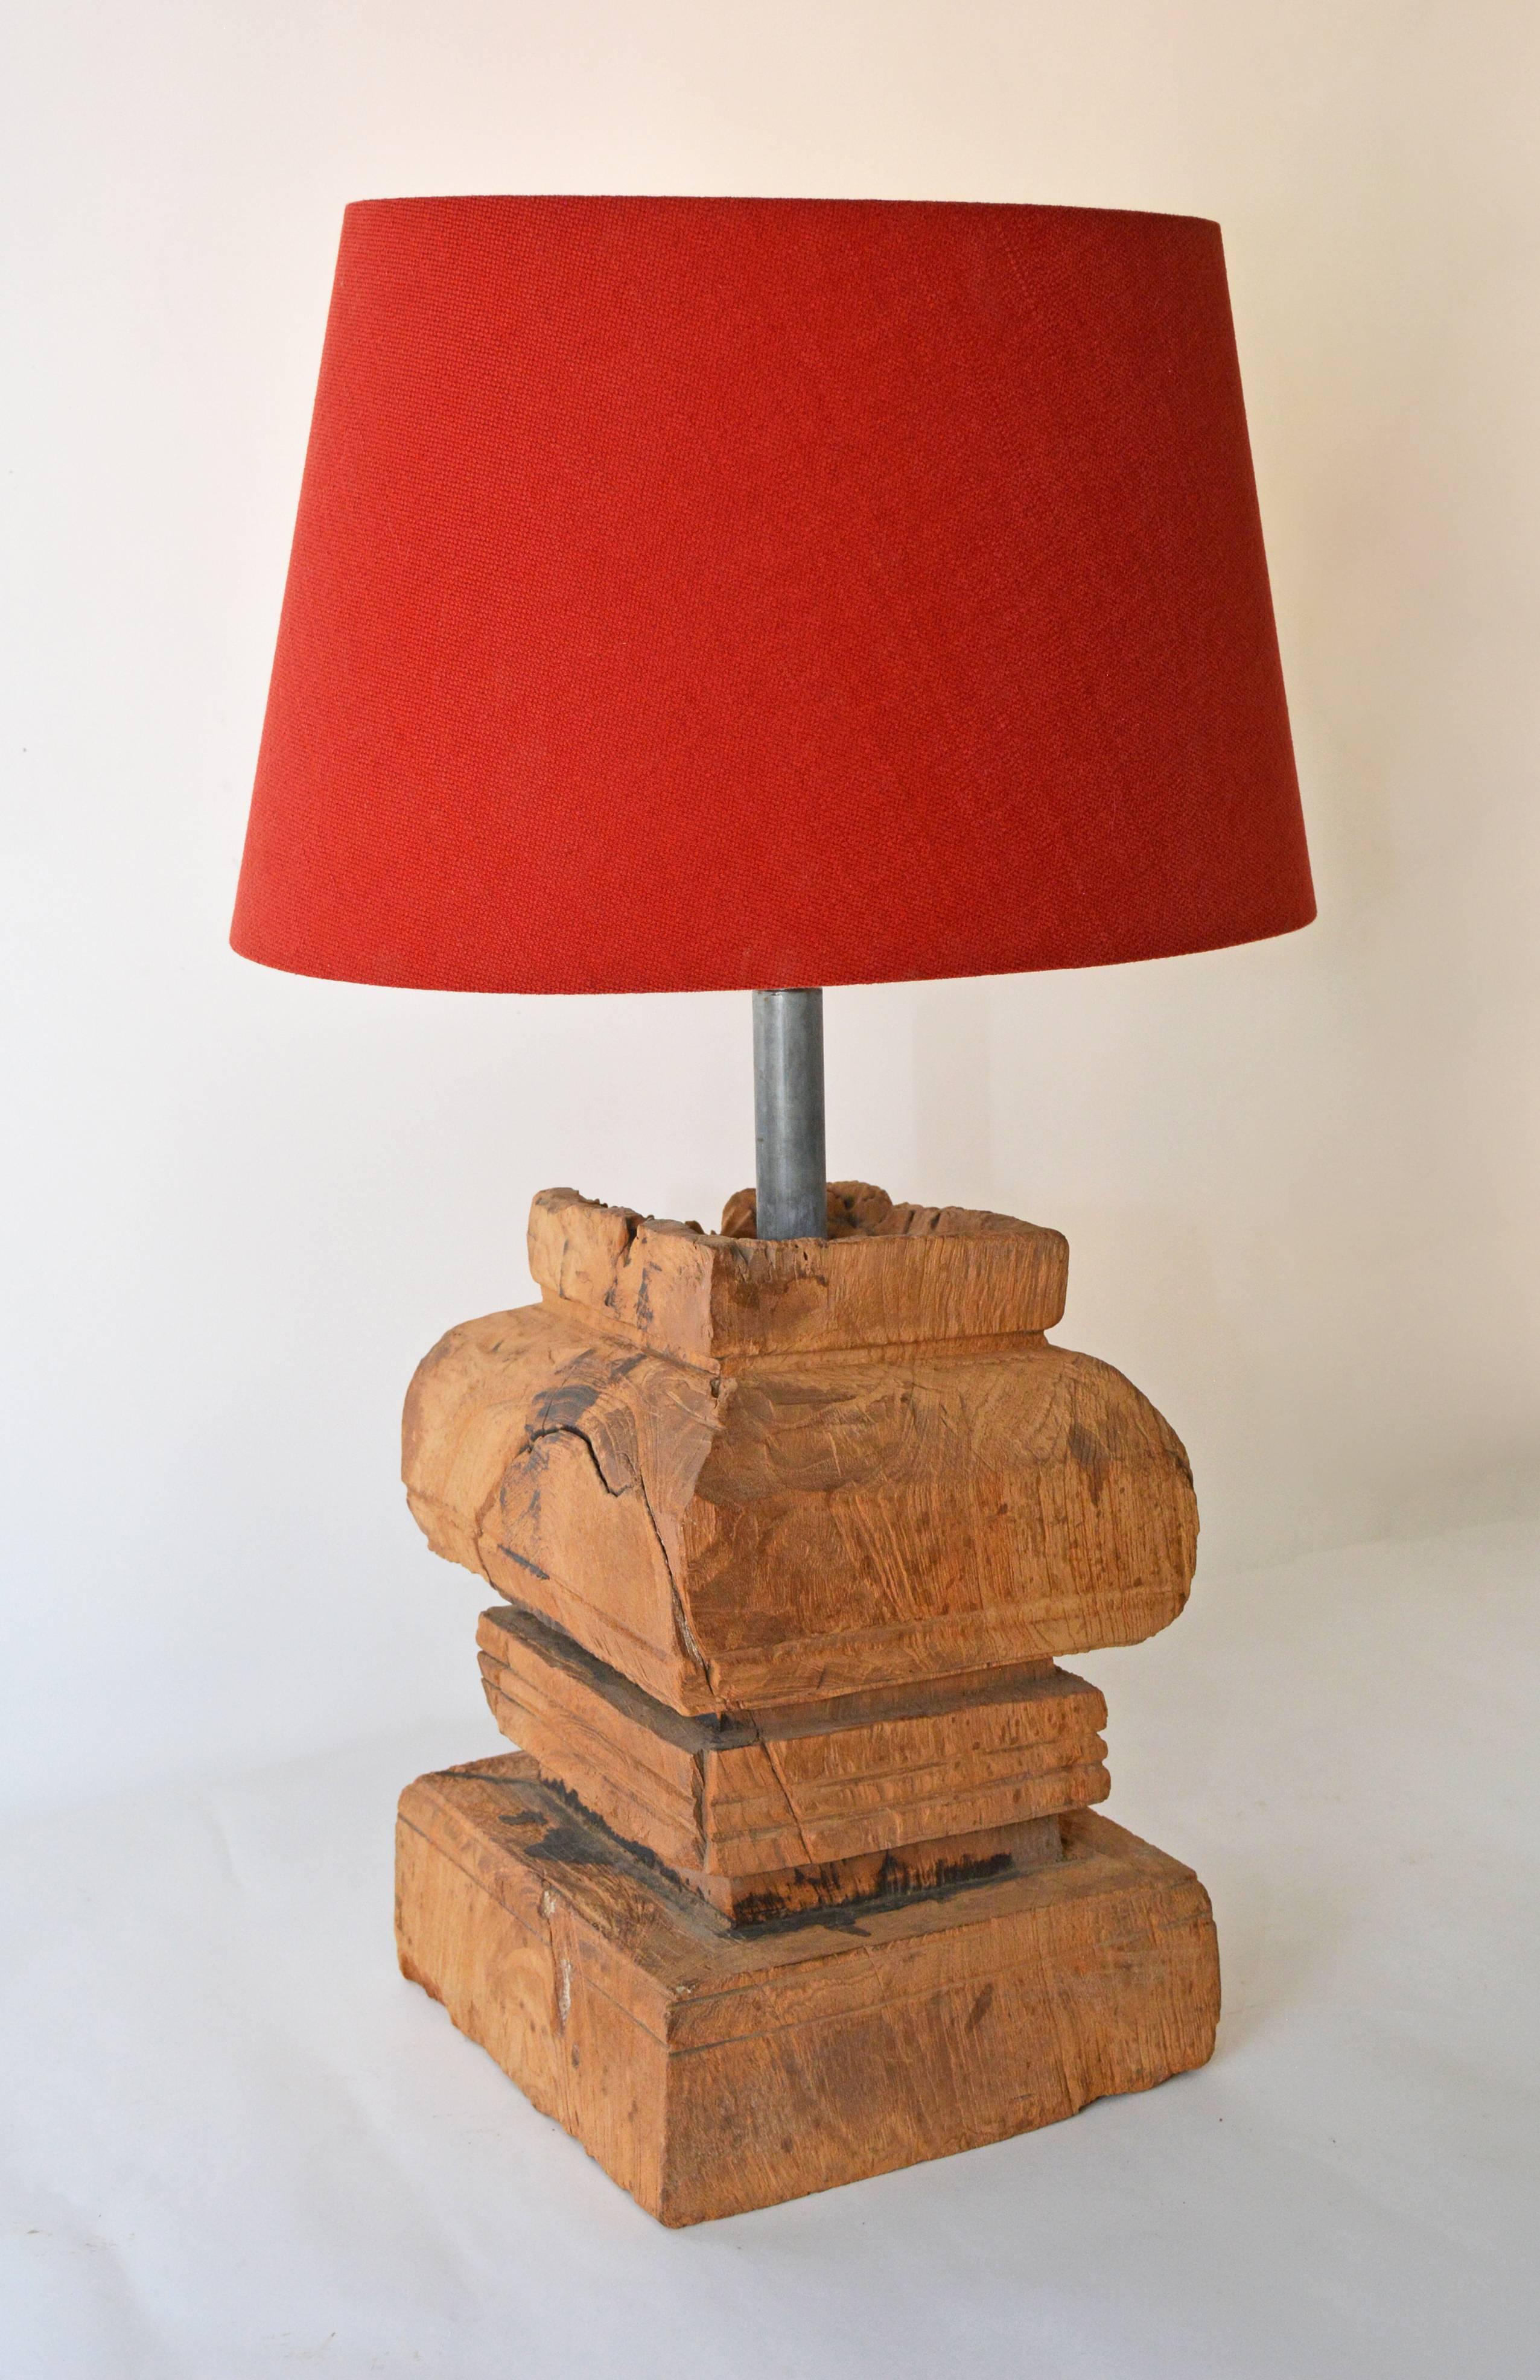 Cette lampe organique rustique est composée d'une base en bois sculpté chinois ancien, issu d'un élément architectural, et d'un abat-jour ovale en lin belge rouge. La lampe et l'abat-jour peuvent être vendus séparément. Lampe $1200/ abat-jour